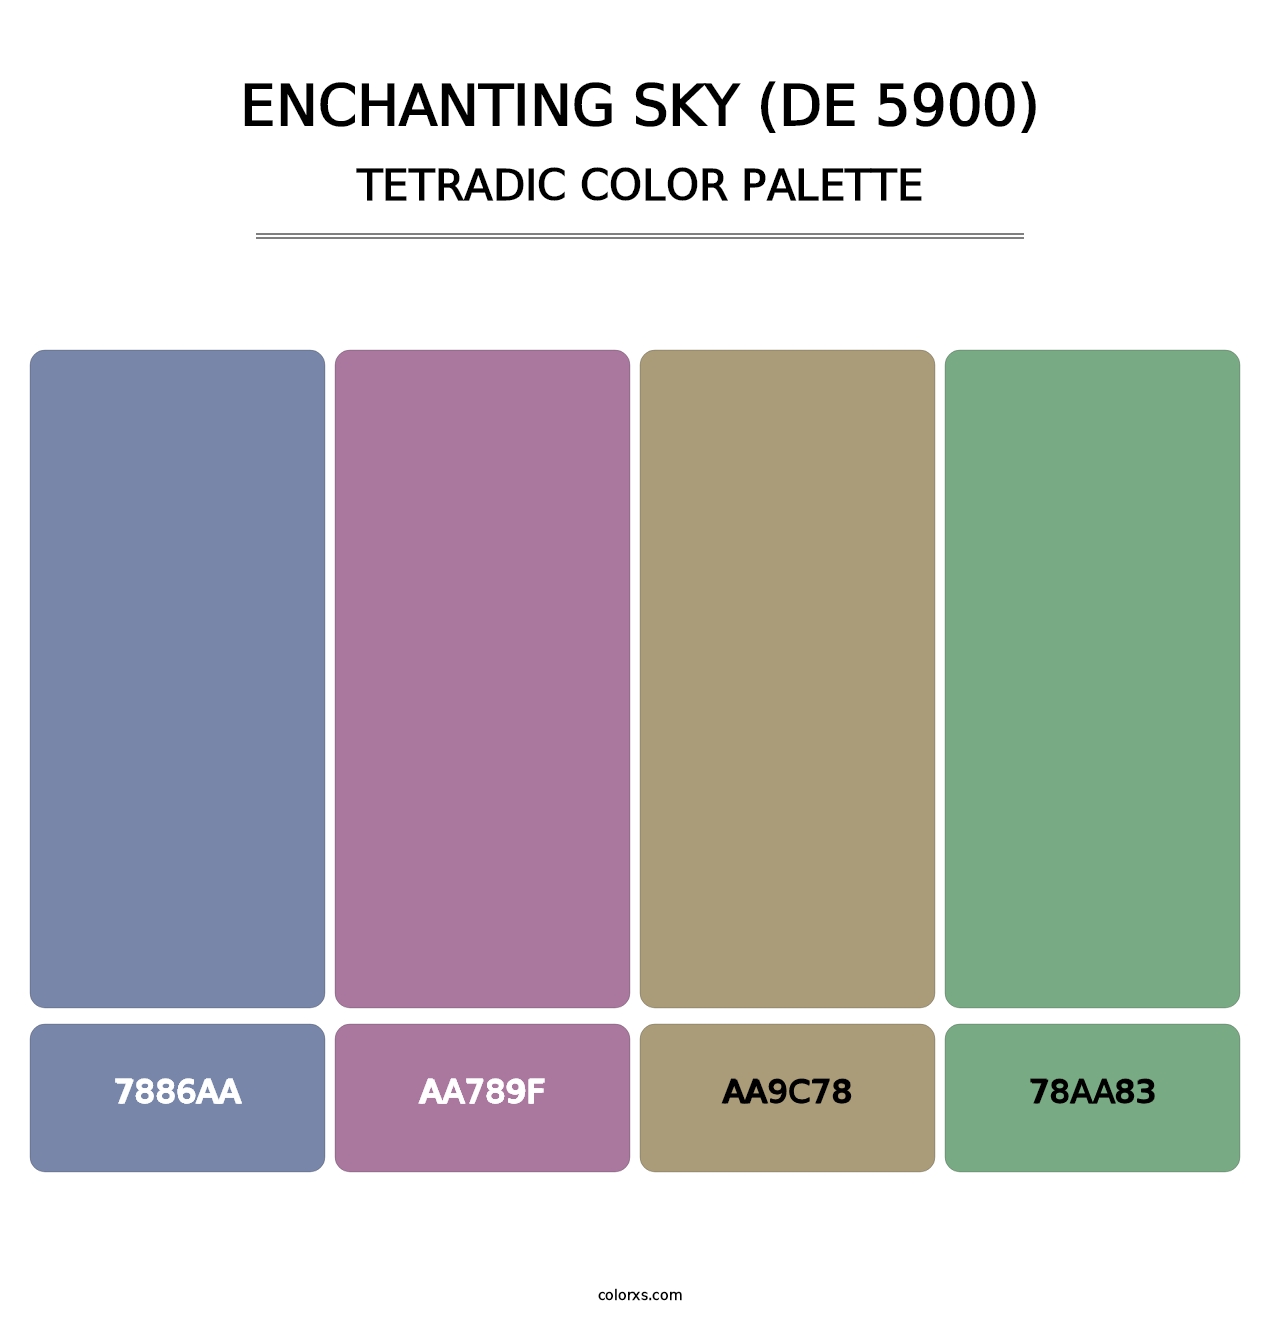 Enchanting Sky (DE 5900) - Tetradic Color Palette